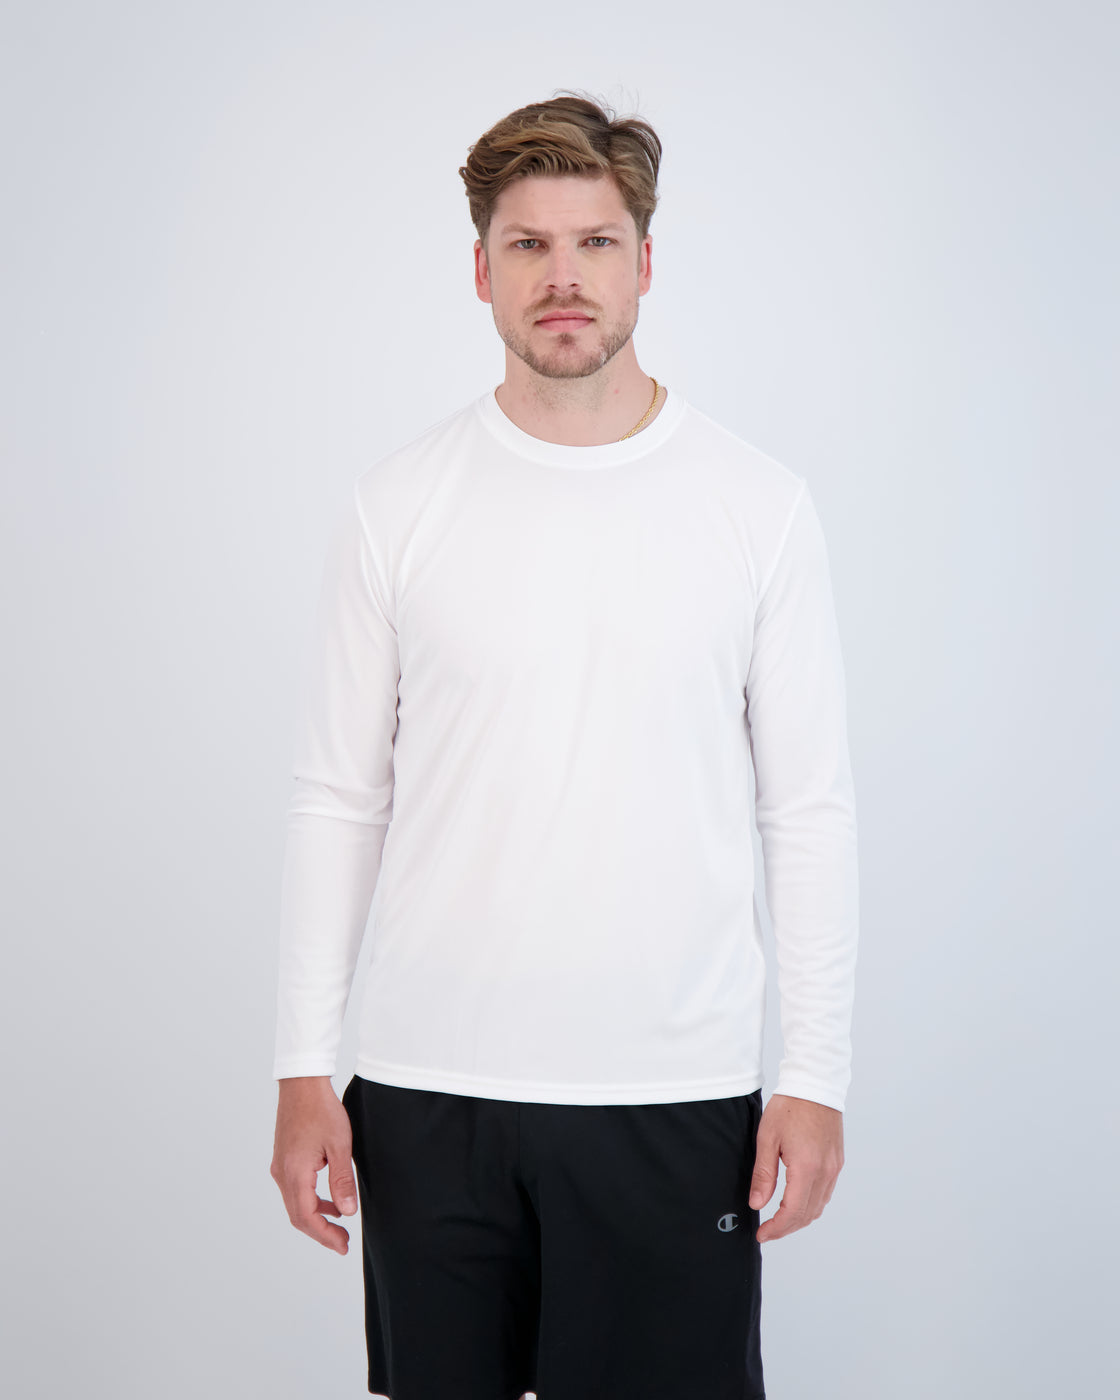 Rogue Men's Performance Longsleeve Sun Shirt - Men's XL - White